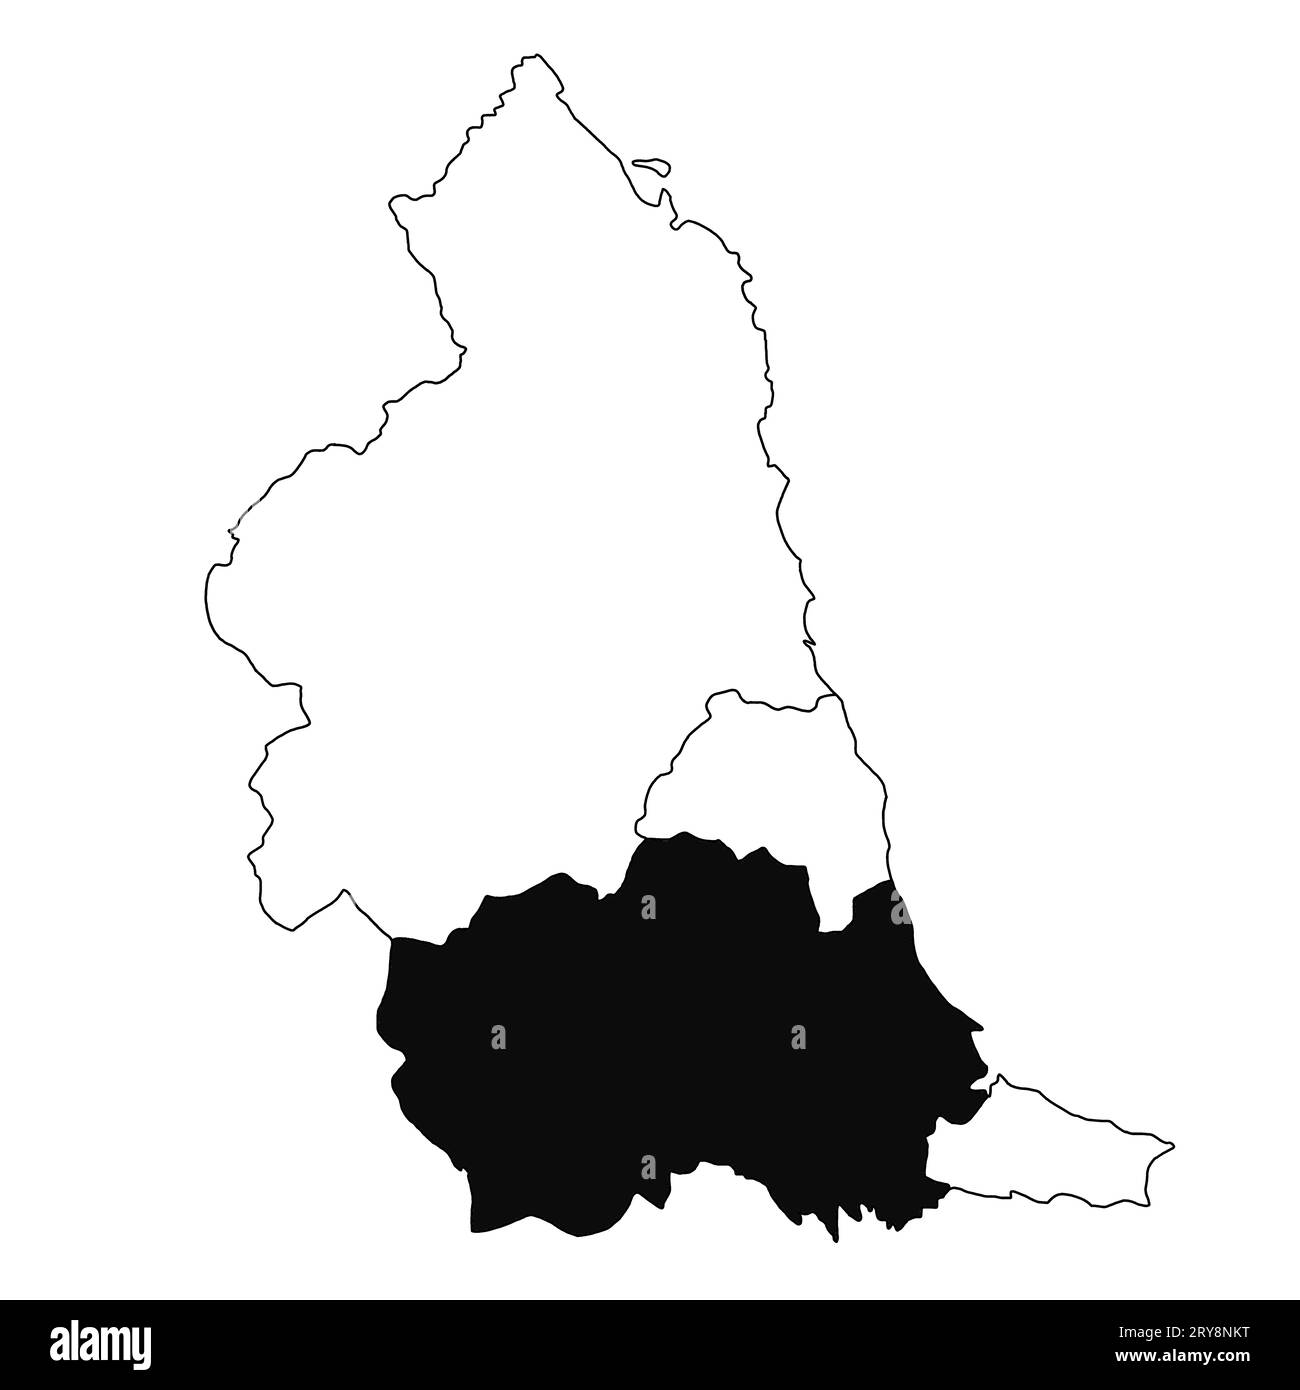 Mapa de en la provincia del noreste de Inglaterra sobre fondo blanco. Mapa de un solo condado resaltado por color negro en el mapa administrativo del noreste de Inglaterra. Foto de stock